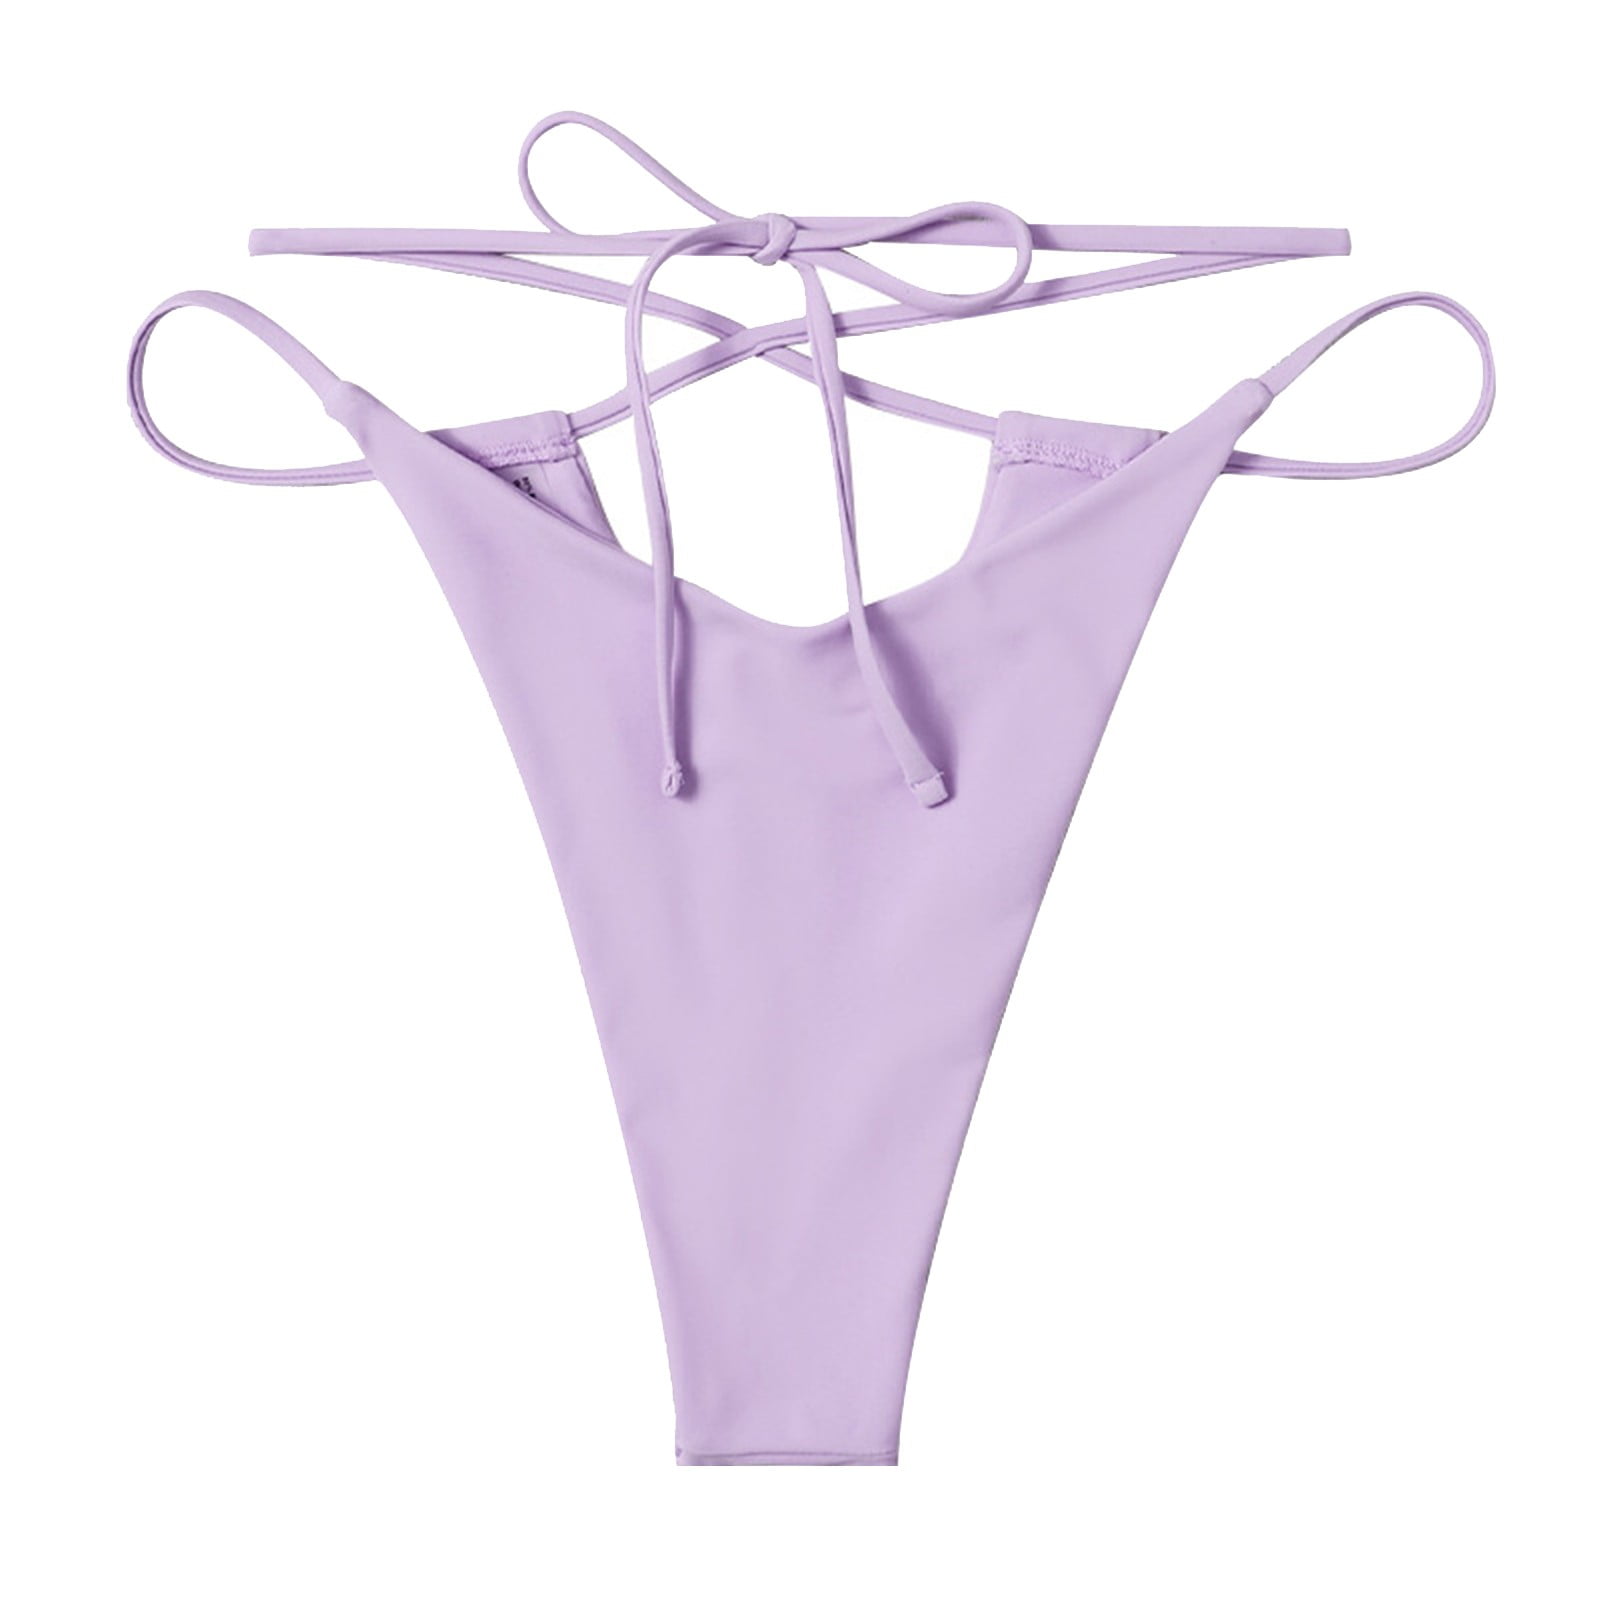 kpoplk Women's Tie Side Bikini Bottoms Mid Rise String Bathing Suits ...